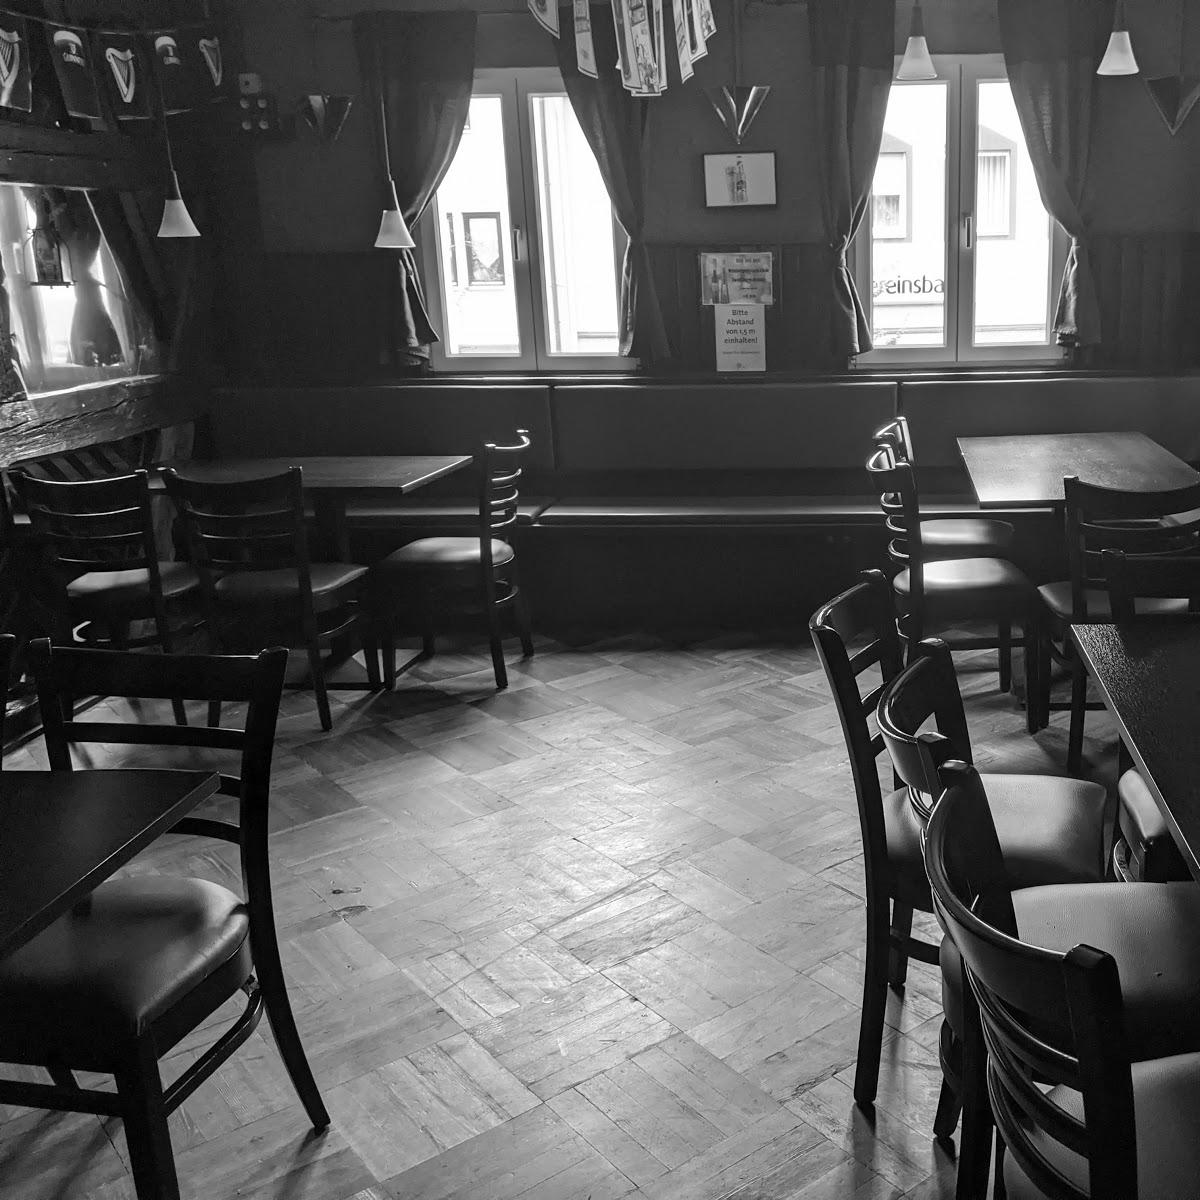 Restaurant "Dubliner Irish Pub" in Neustadt an der Aisch